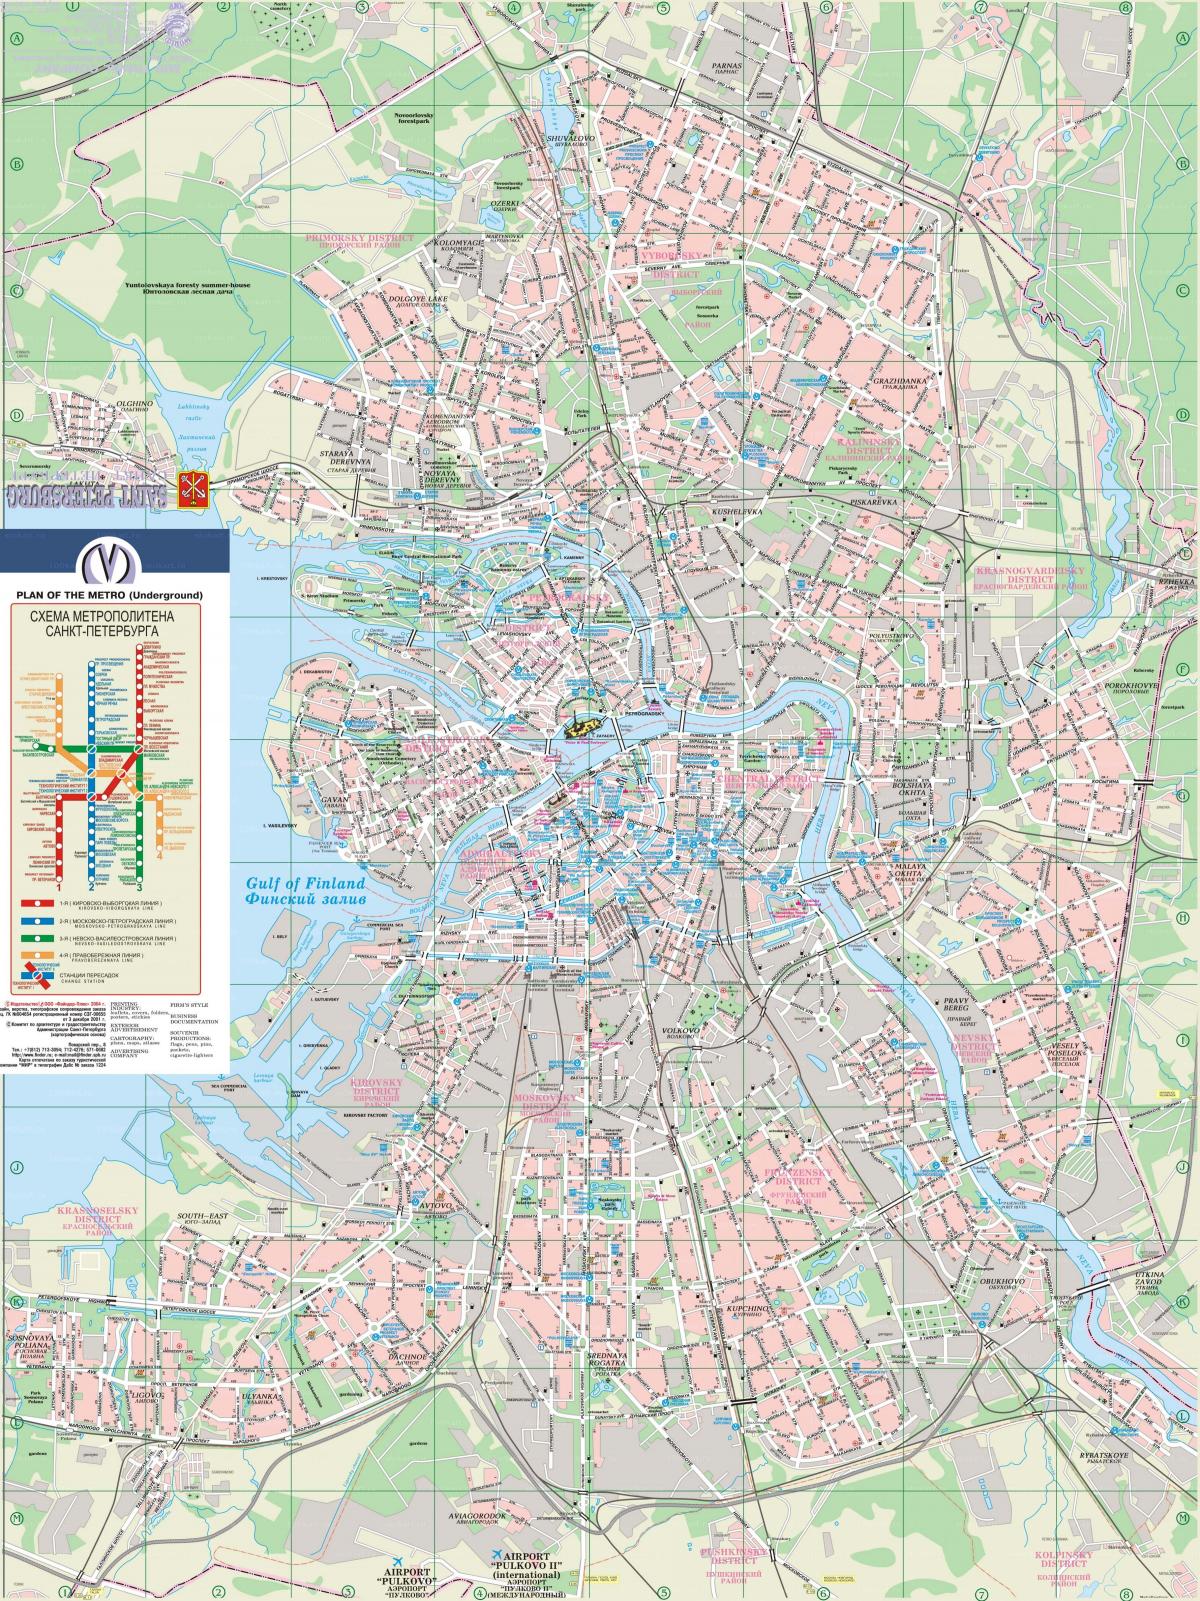 Plan de la ville de St Petersburg